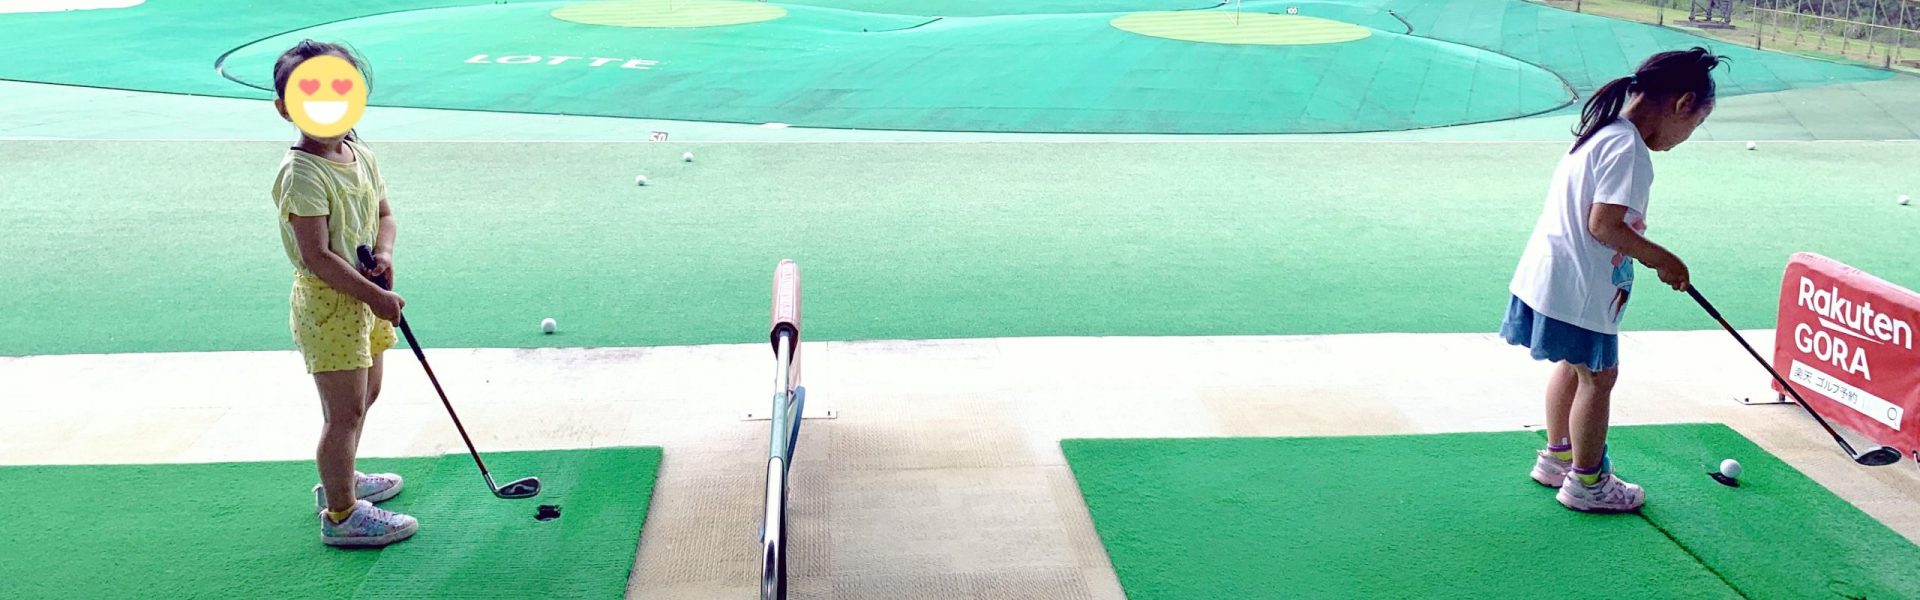 5歳双子 ロッテ葛西LPGAジュニアゴルフスクール入校-千代田区から通えるキッズゴルフスクールの体験・口コミ